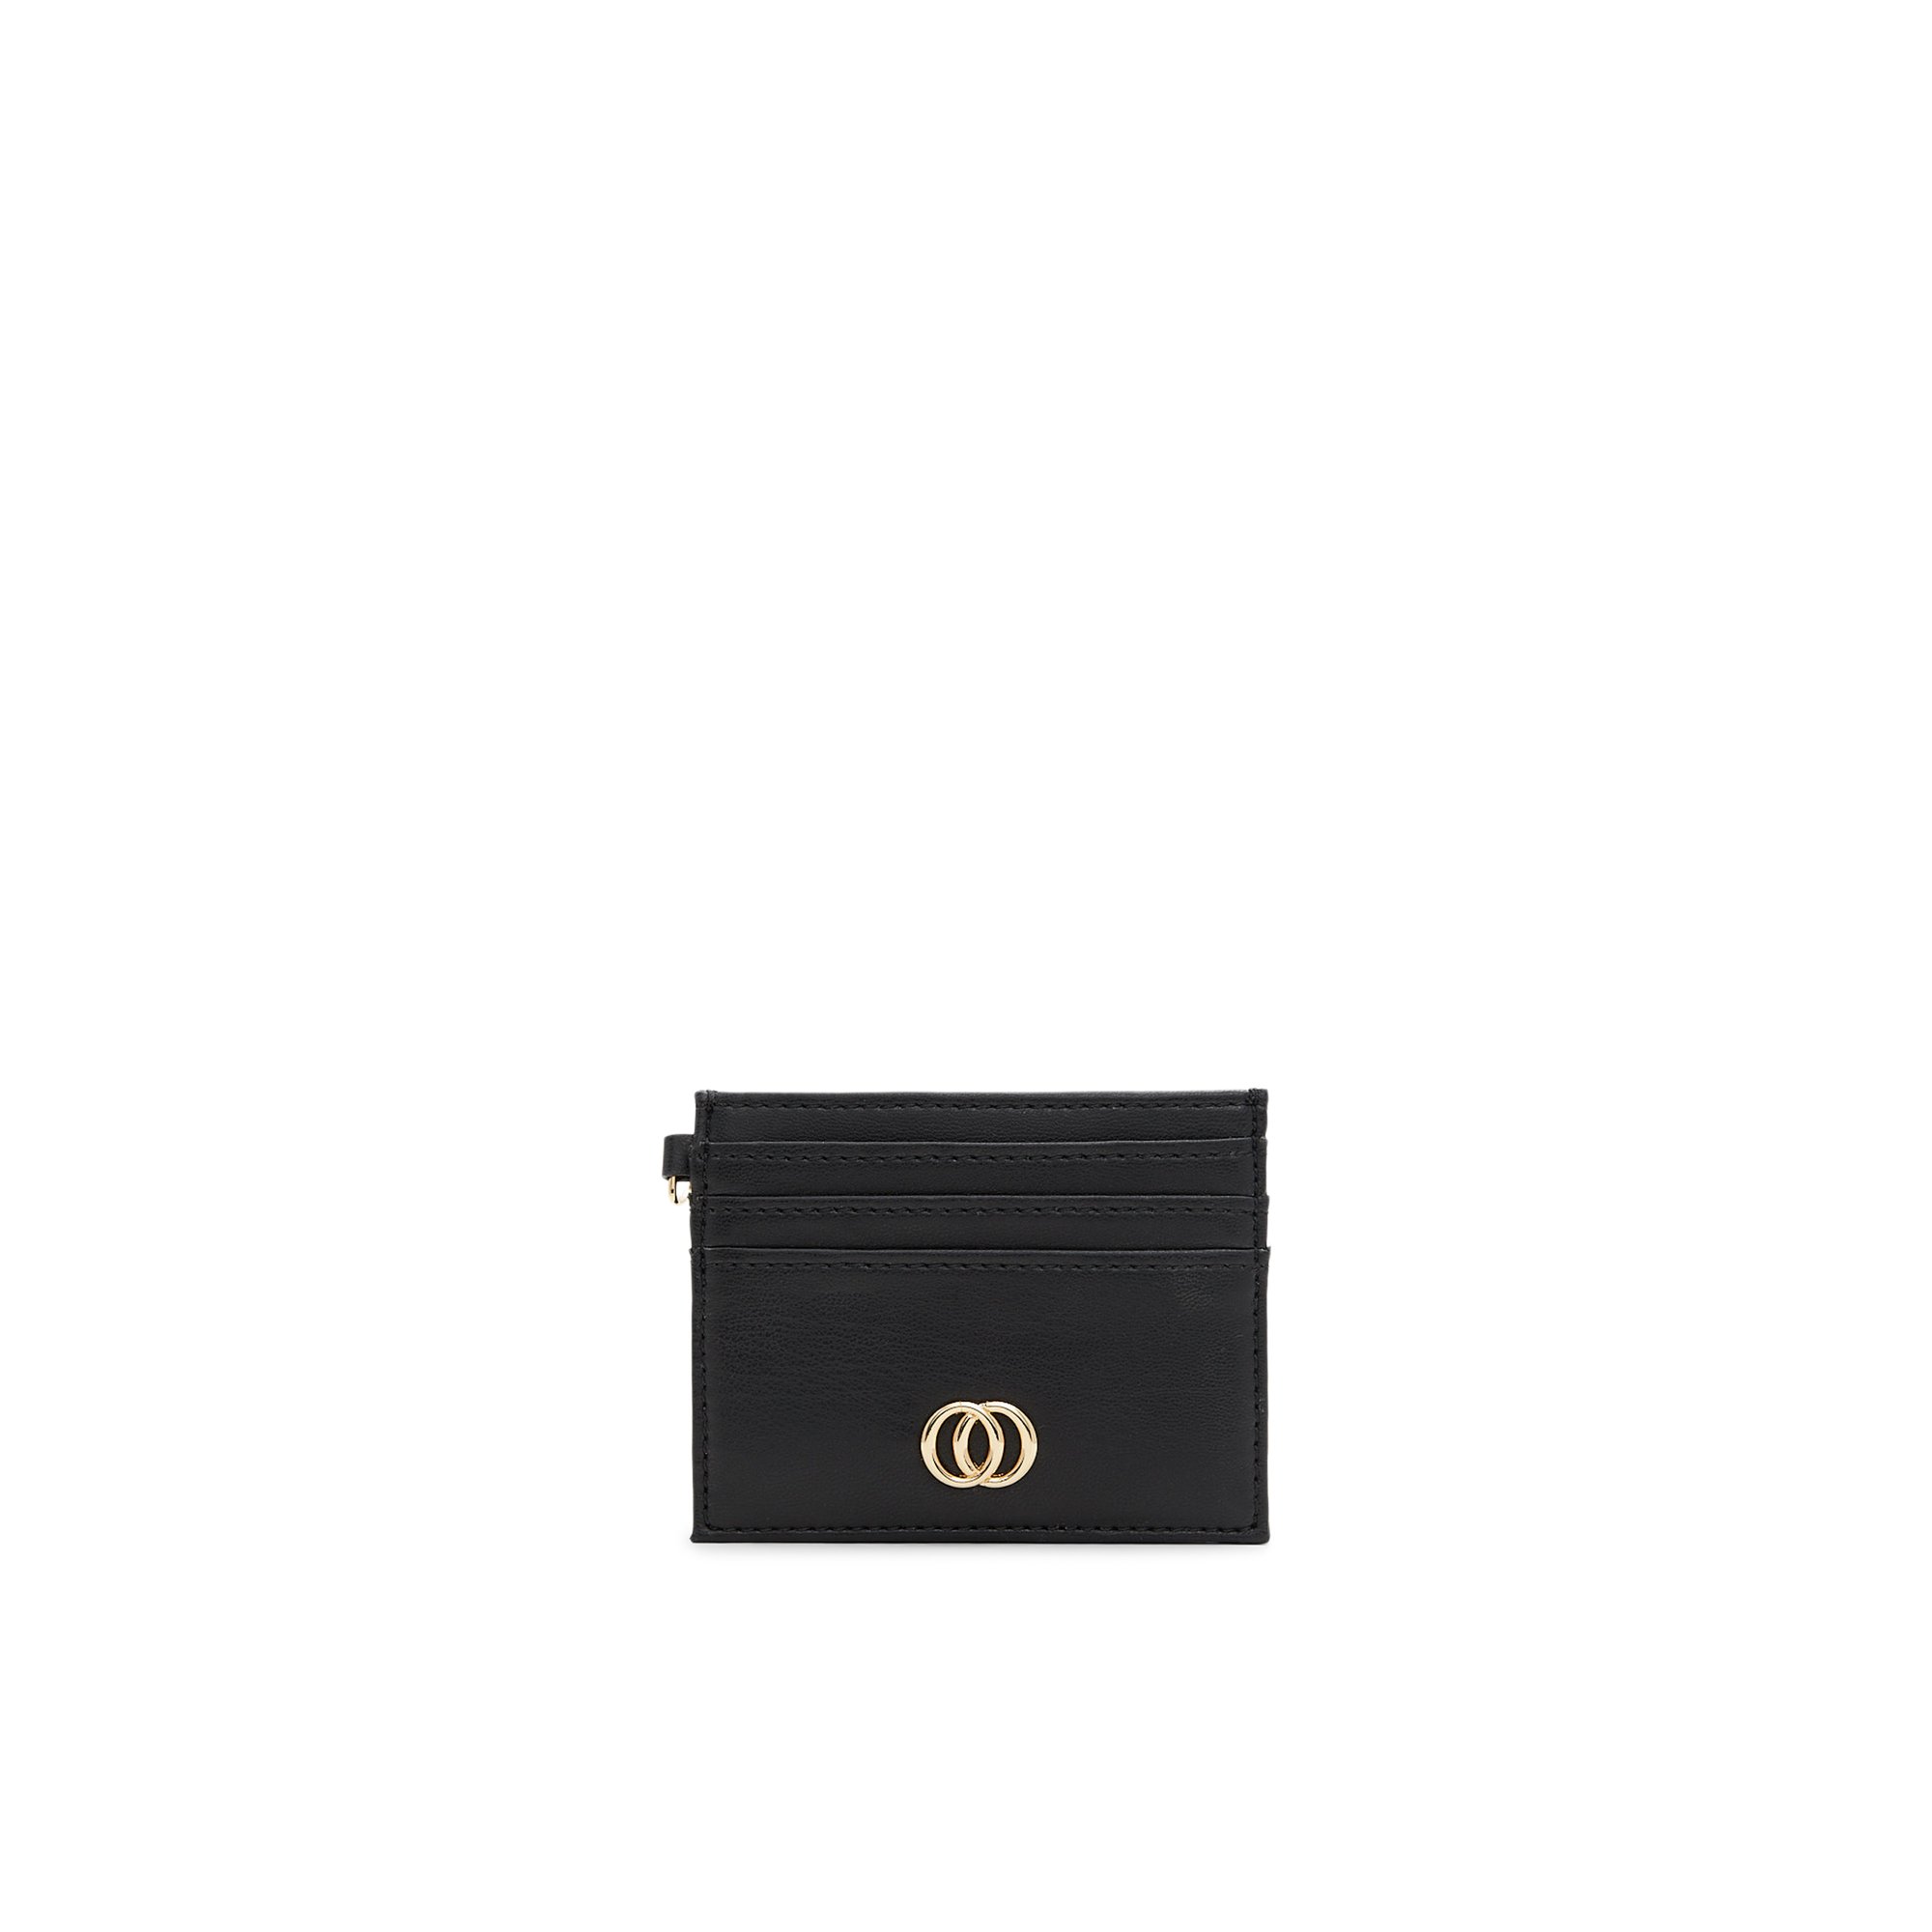 ALDO Limonius - Women's Wallet Handbag - Black/Gold